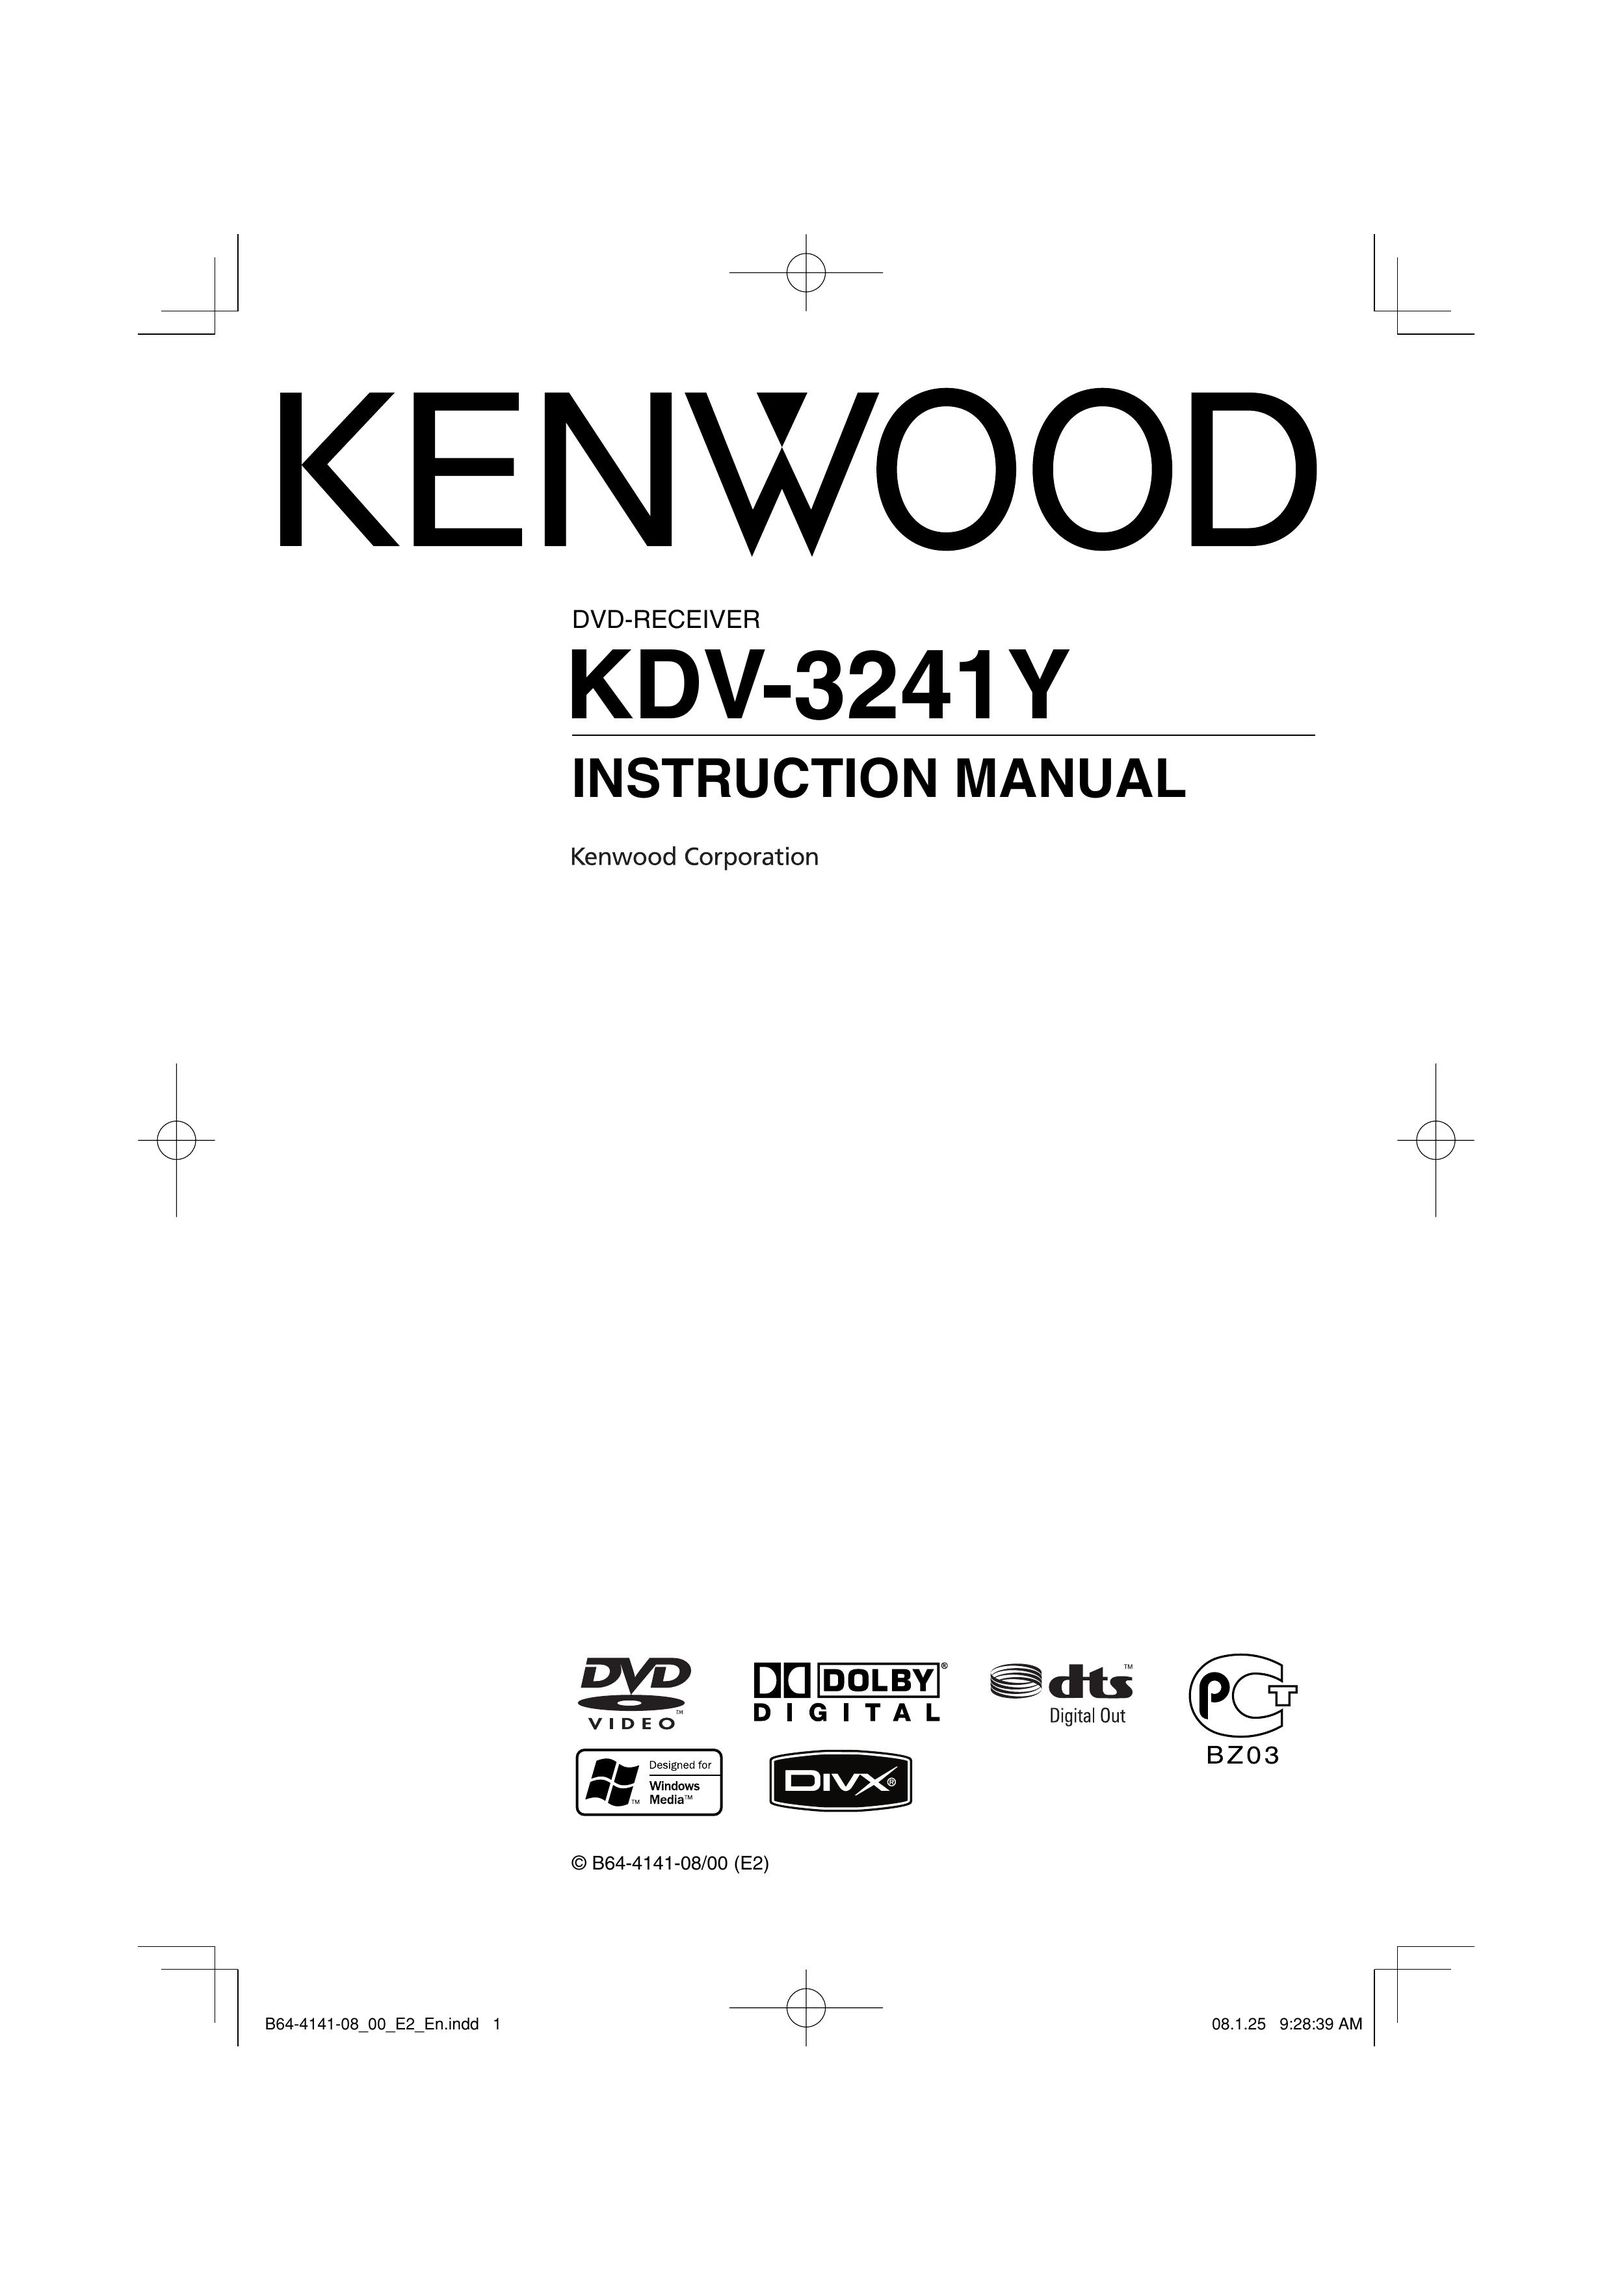 Kenwood KDV-3241Y DVD Player User Manual